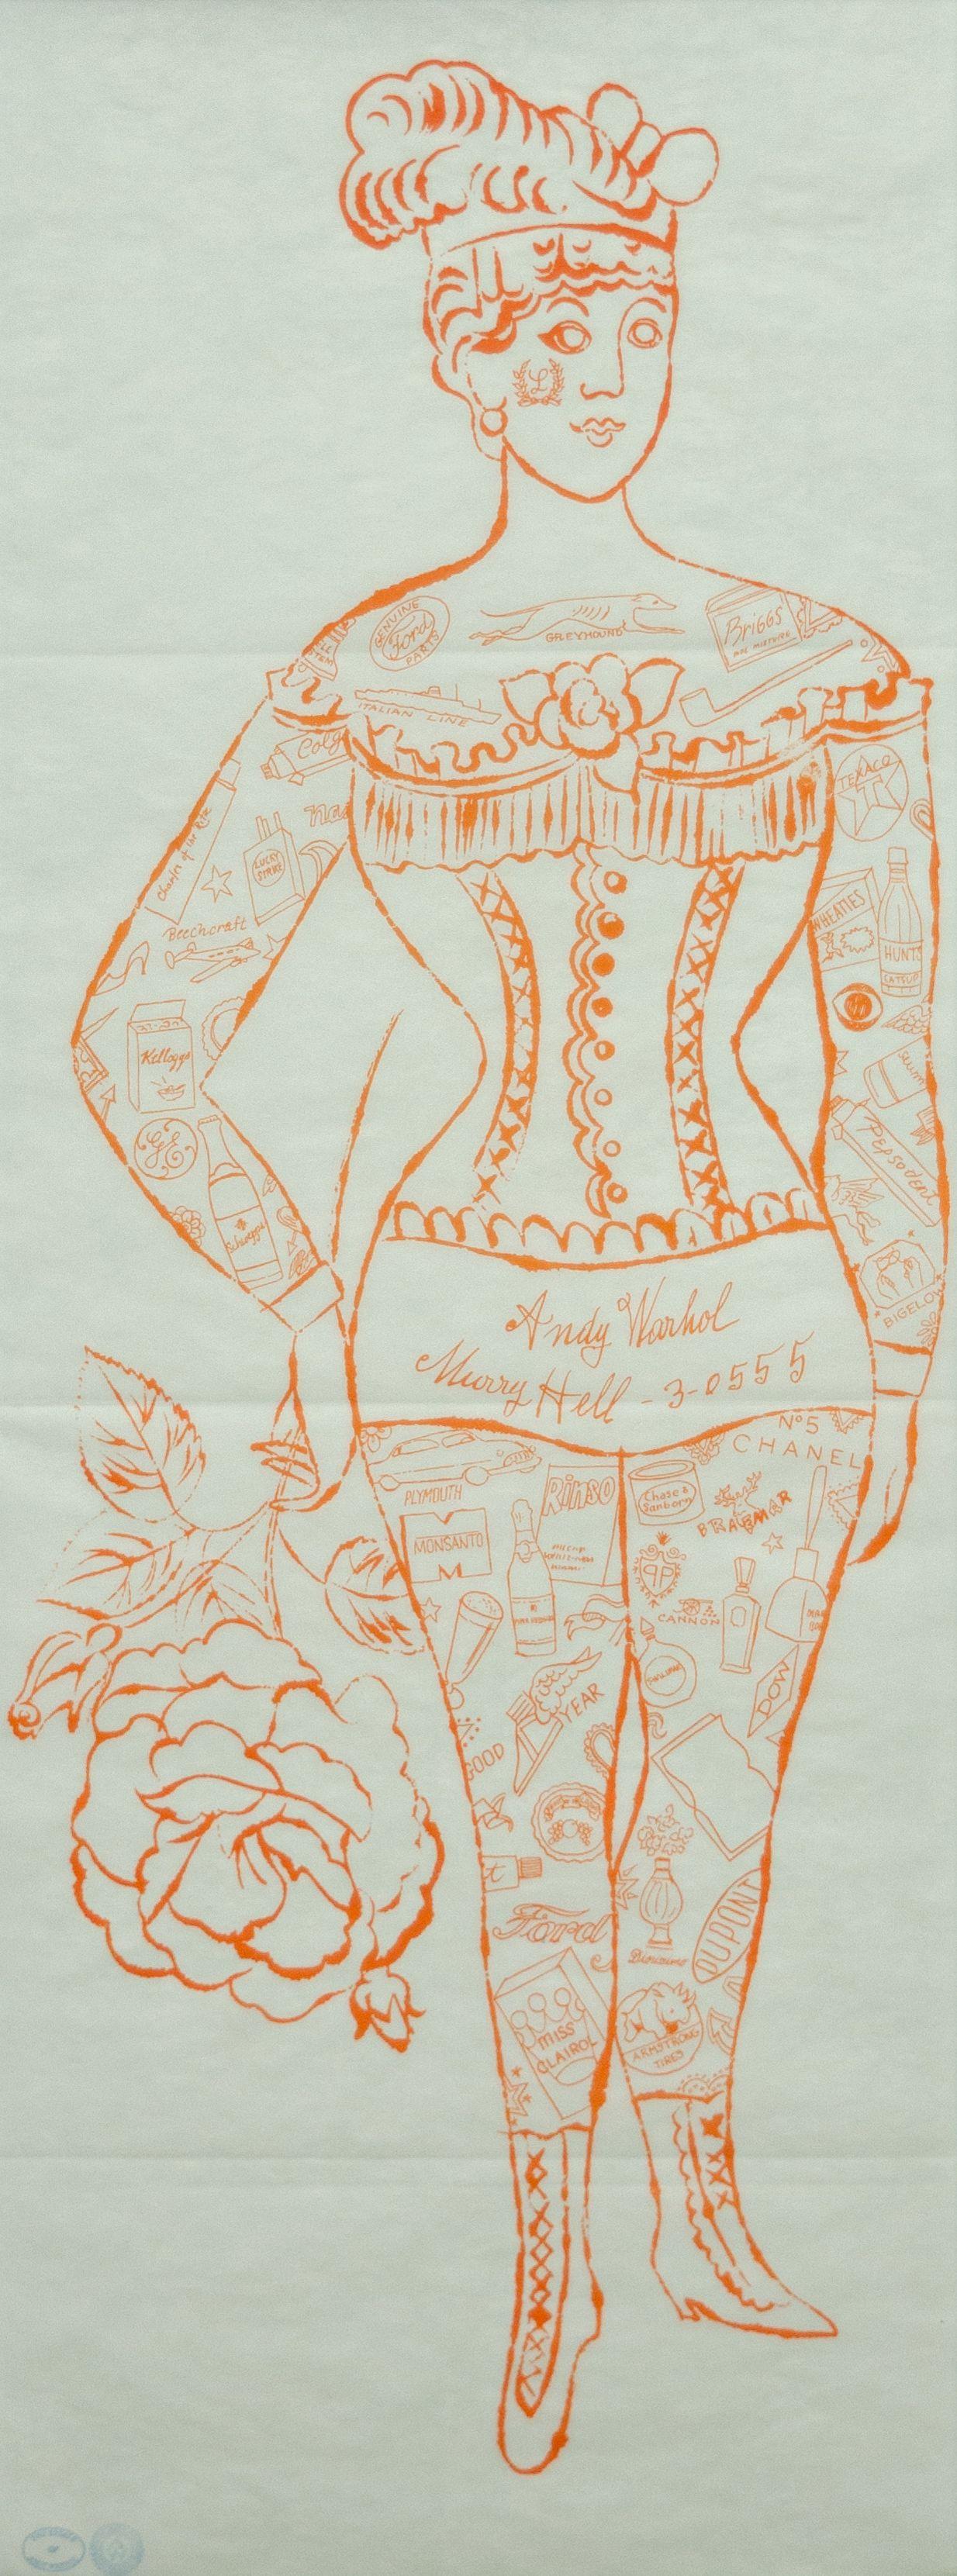 ANDY WARHOL (1928-1987)

La 'Femme tatouée tenant une rose' d'Andy Warhol est une lithographie offset en couleurs sur vélin en peau d'oignon vert pâle, avec des plis horizontaux tels qu'ils ont été émis, porte la succession d'Andy Warhol et la